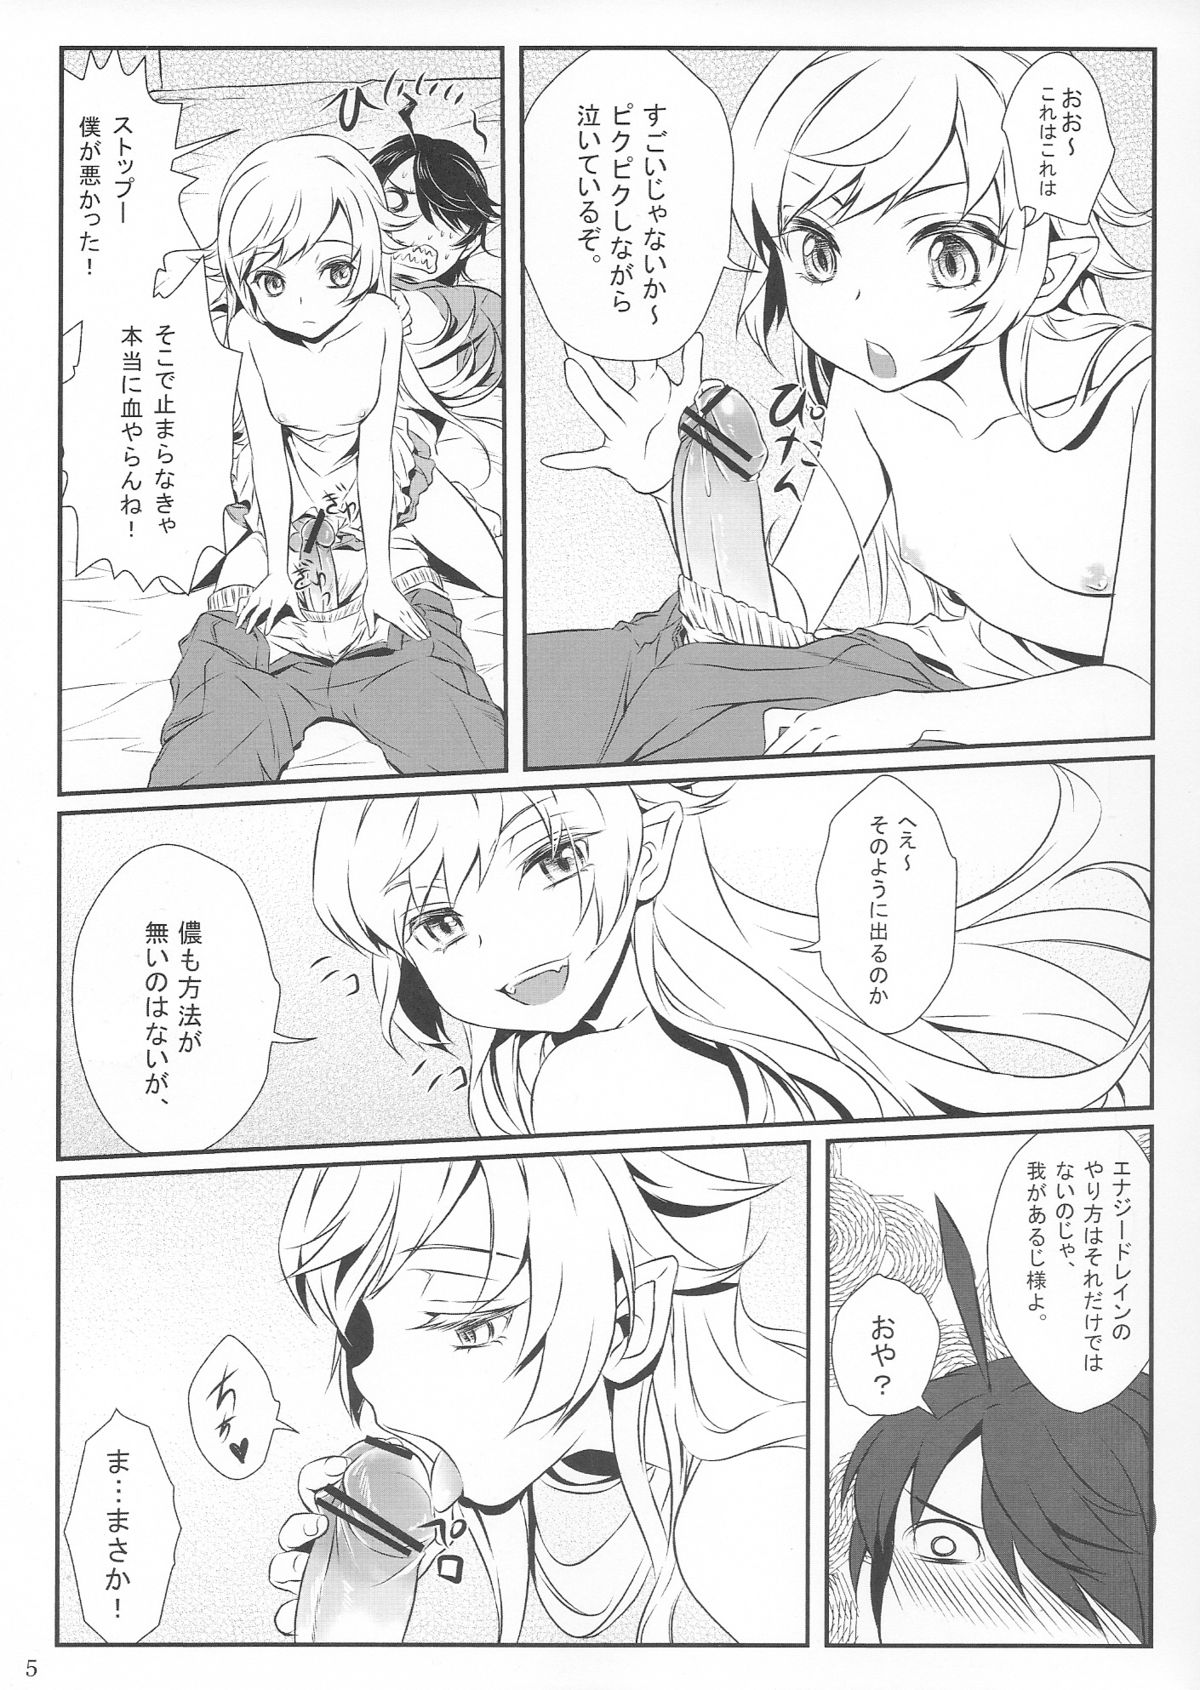 (CT20) [Soramimi (Mytyl)] Shinobu No! (Bakemonogatari) page 7 full